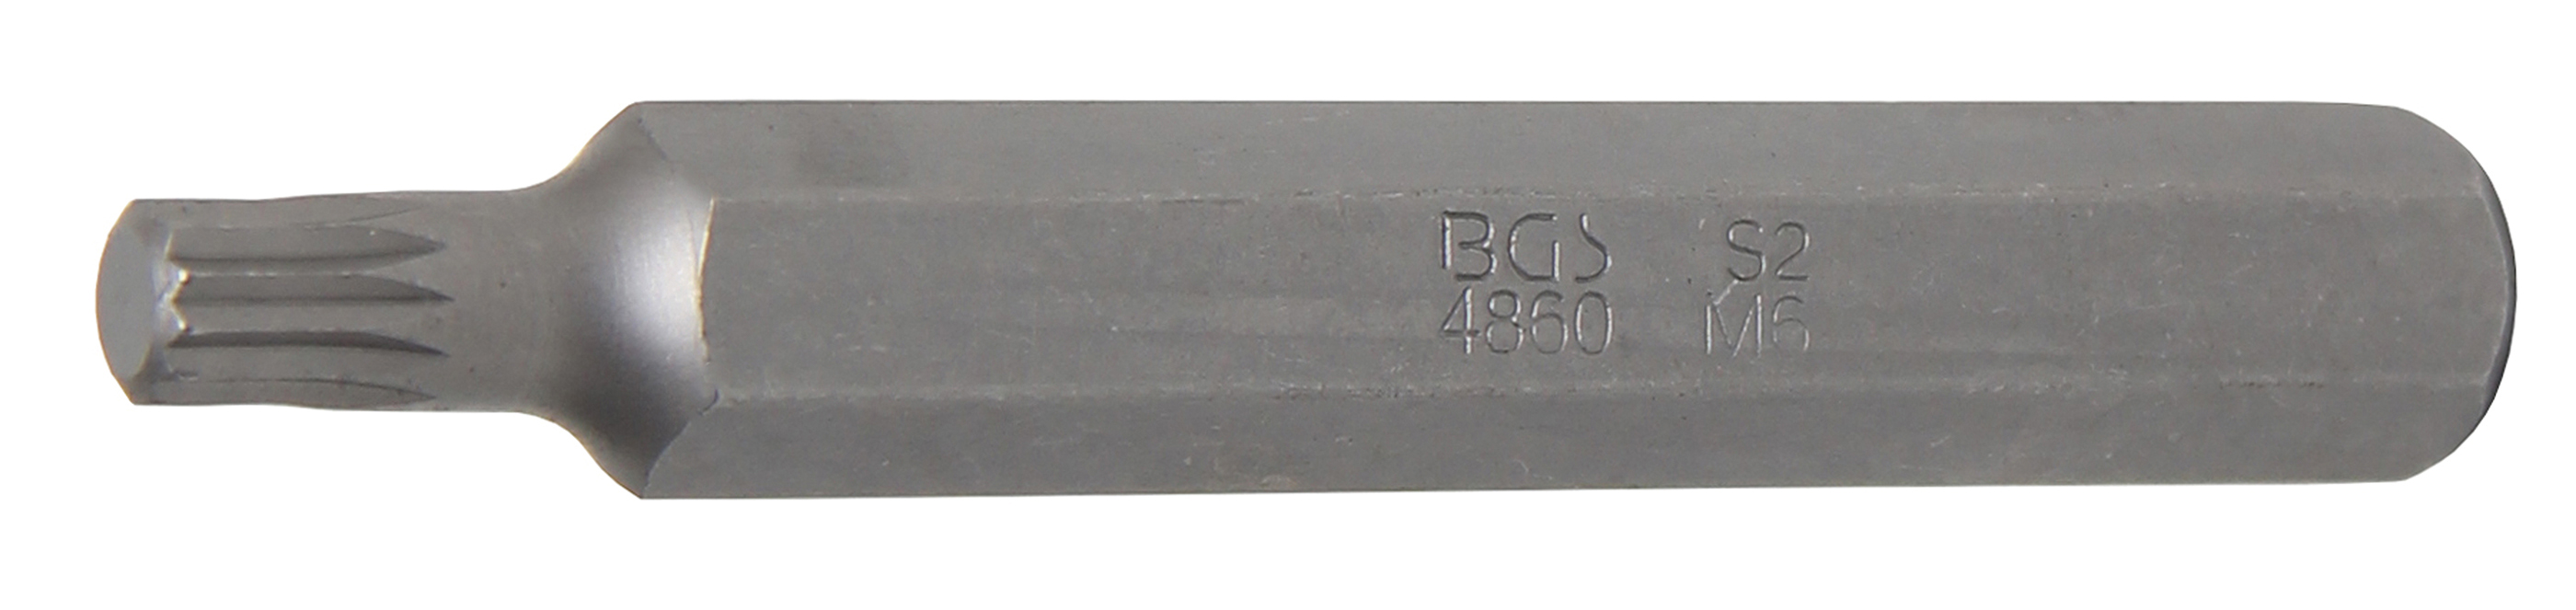 BGS 4860 Bit cu dinţi multipli M6, Spline (XZN), lungime 75mm,  antrenare 3/8"